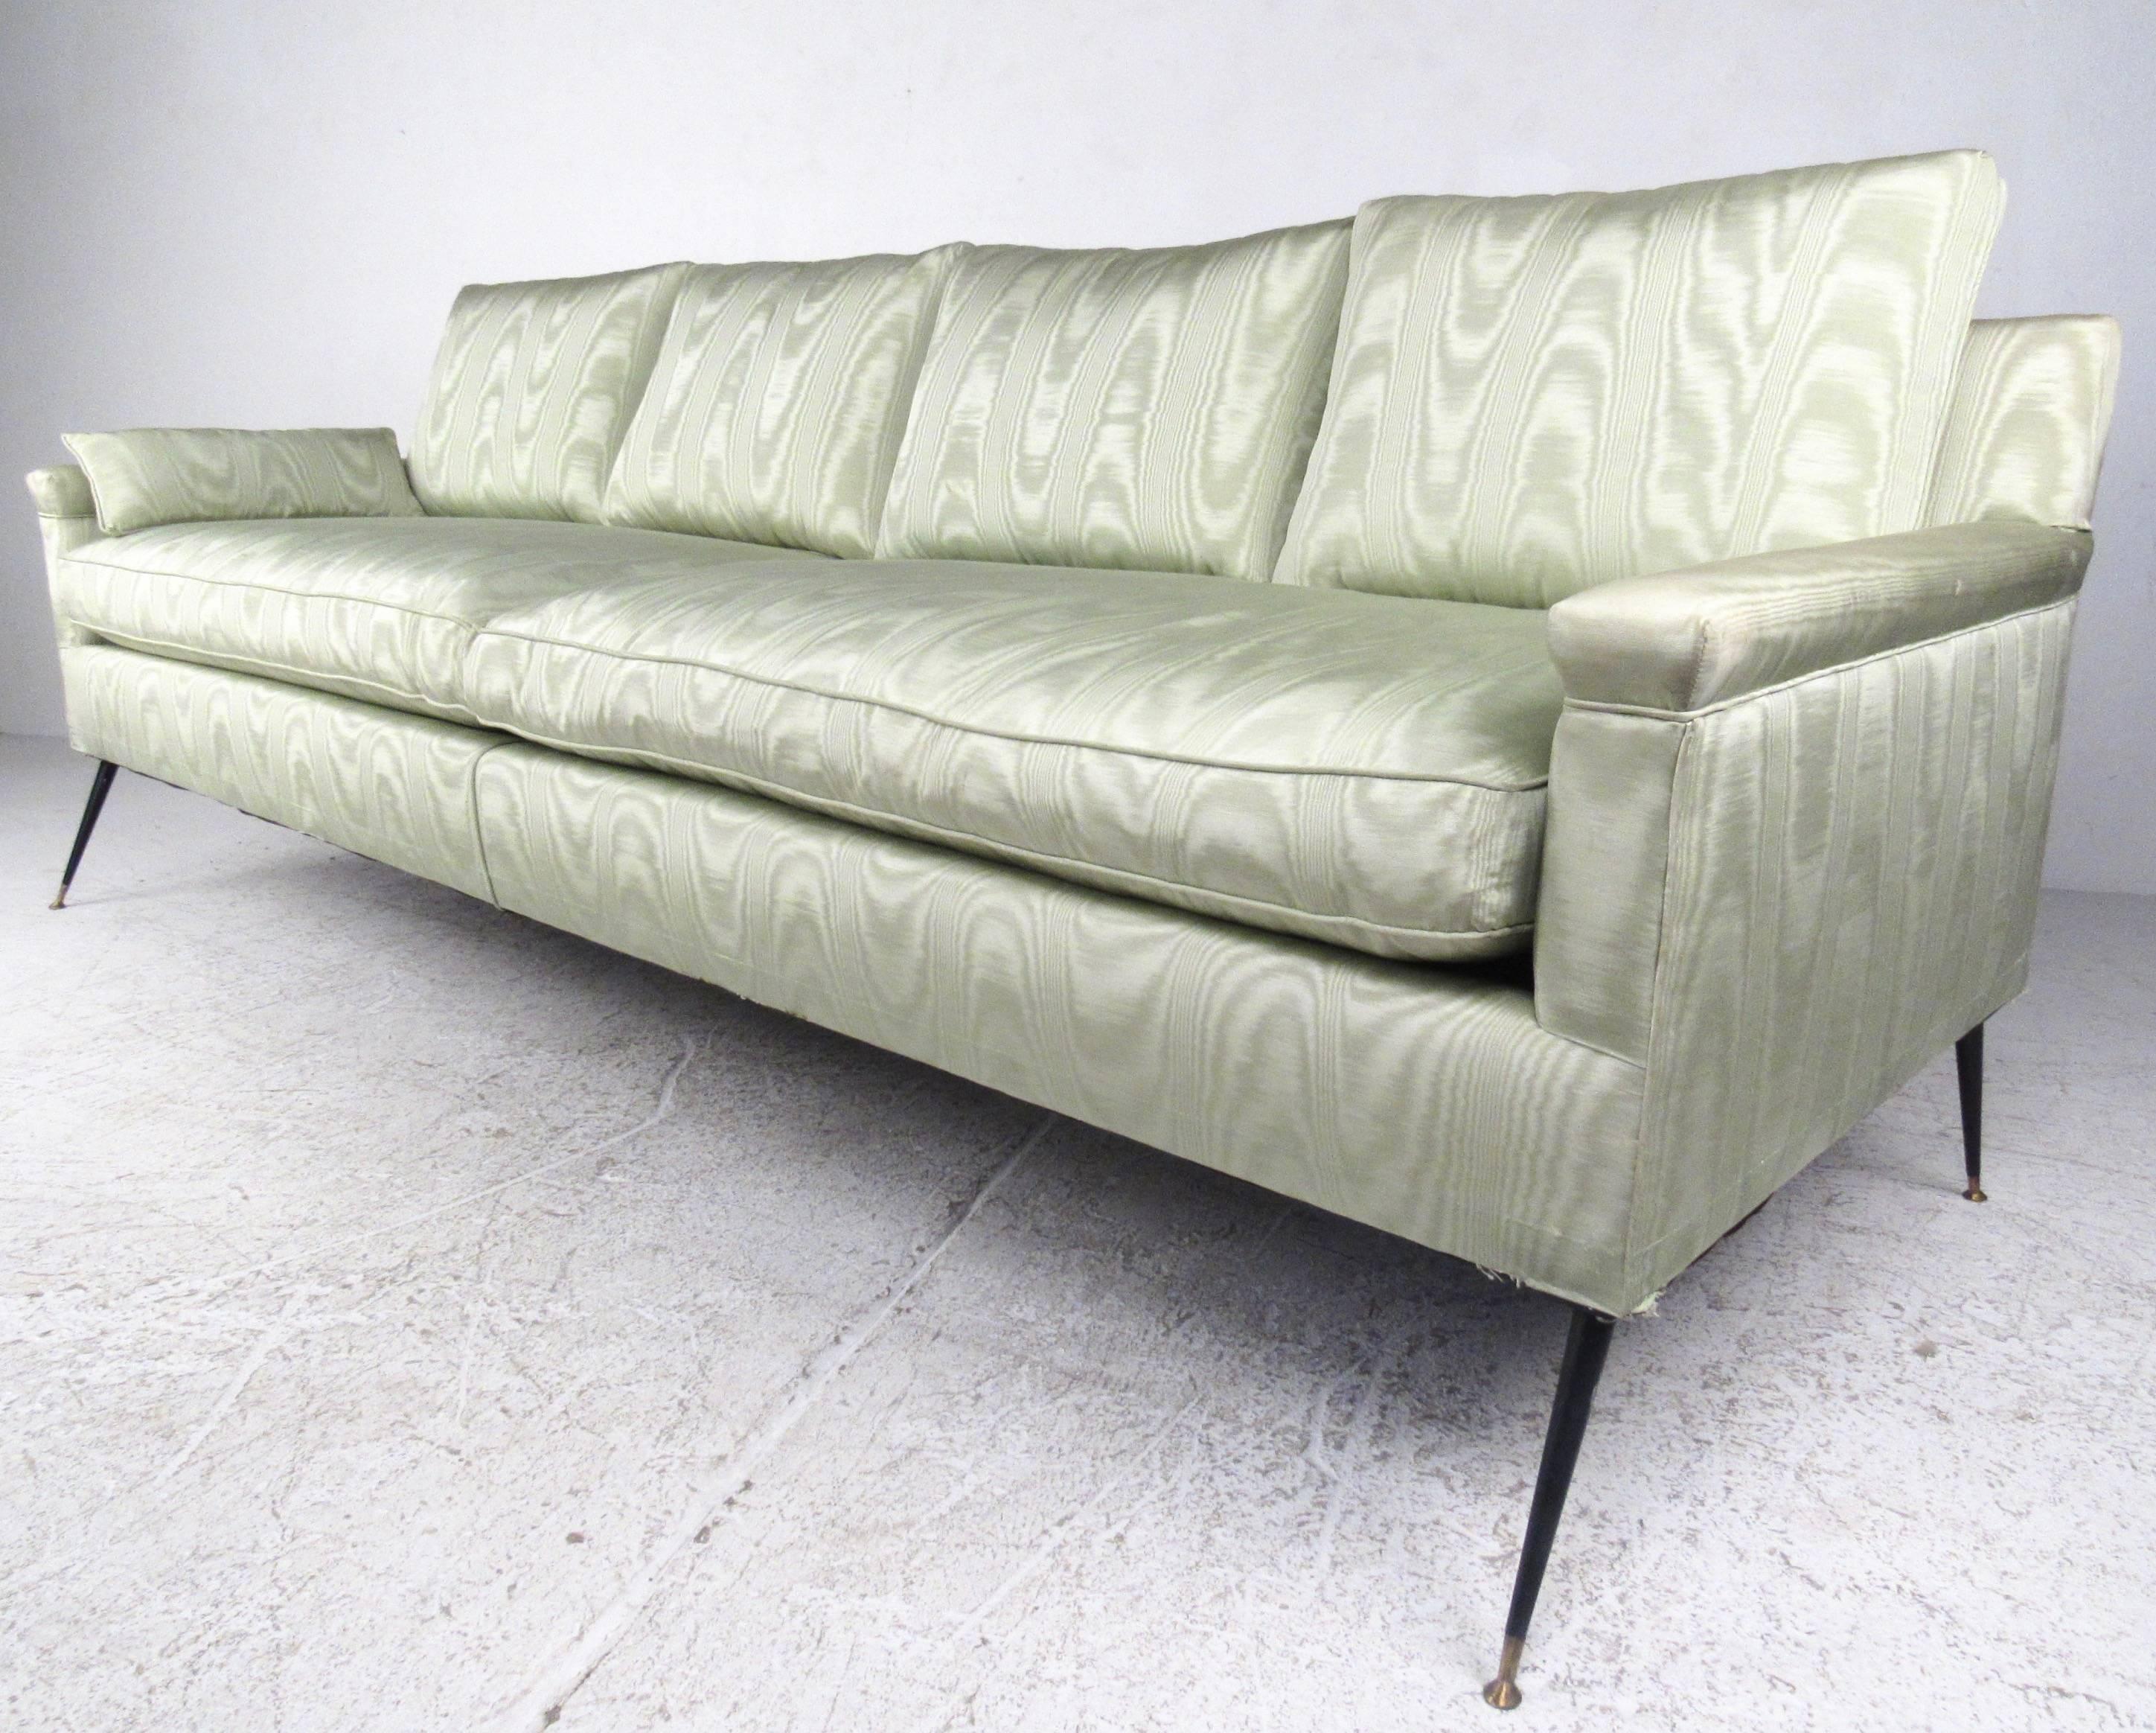 Dieses viersitzige Midcentury-Sofa verfügt über zwei bequeme Kissen und einen einzigartigen Vintage-Stoff. Die schlanken Beine im italienischen Stil verleihen dem Sofa ein einzigartiges Profil, während die breite und gut gepolsterte Sitzfläche es zu